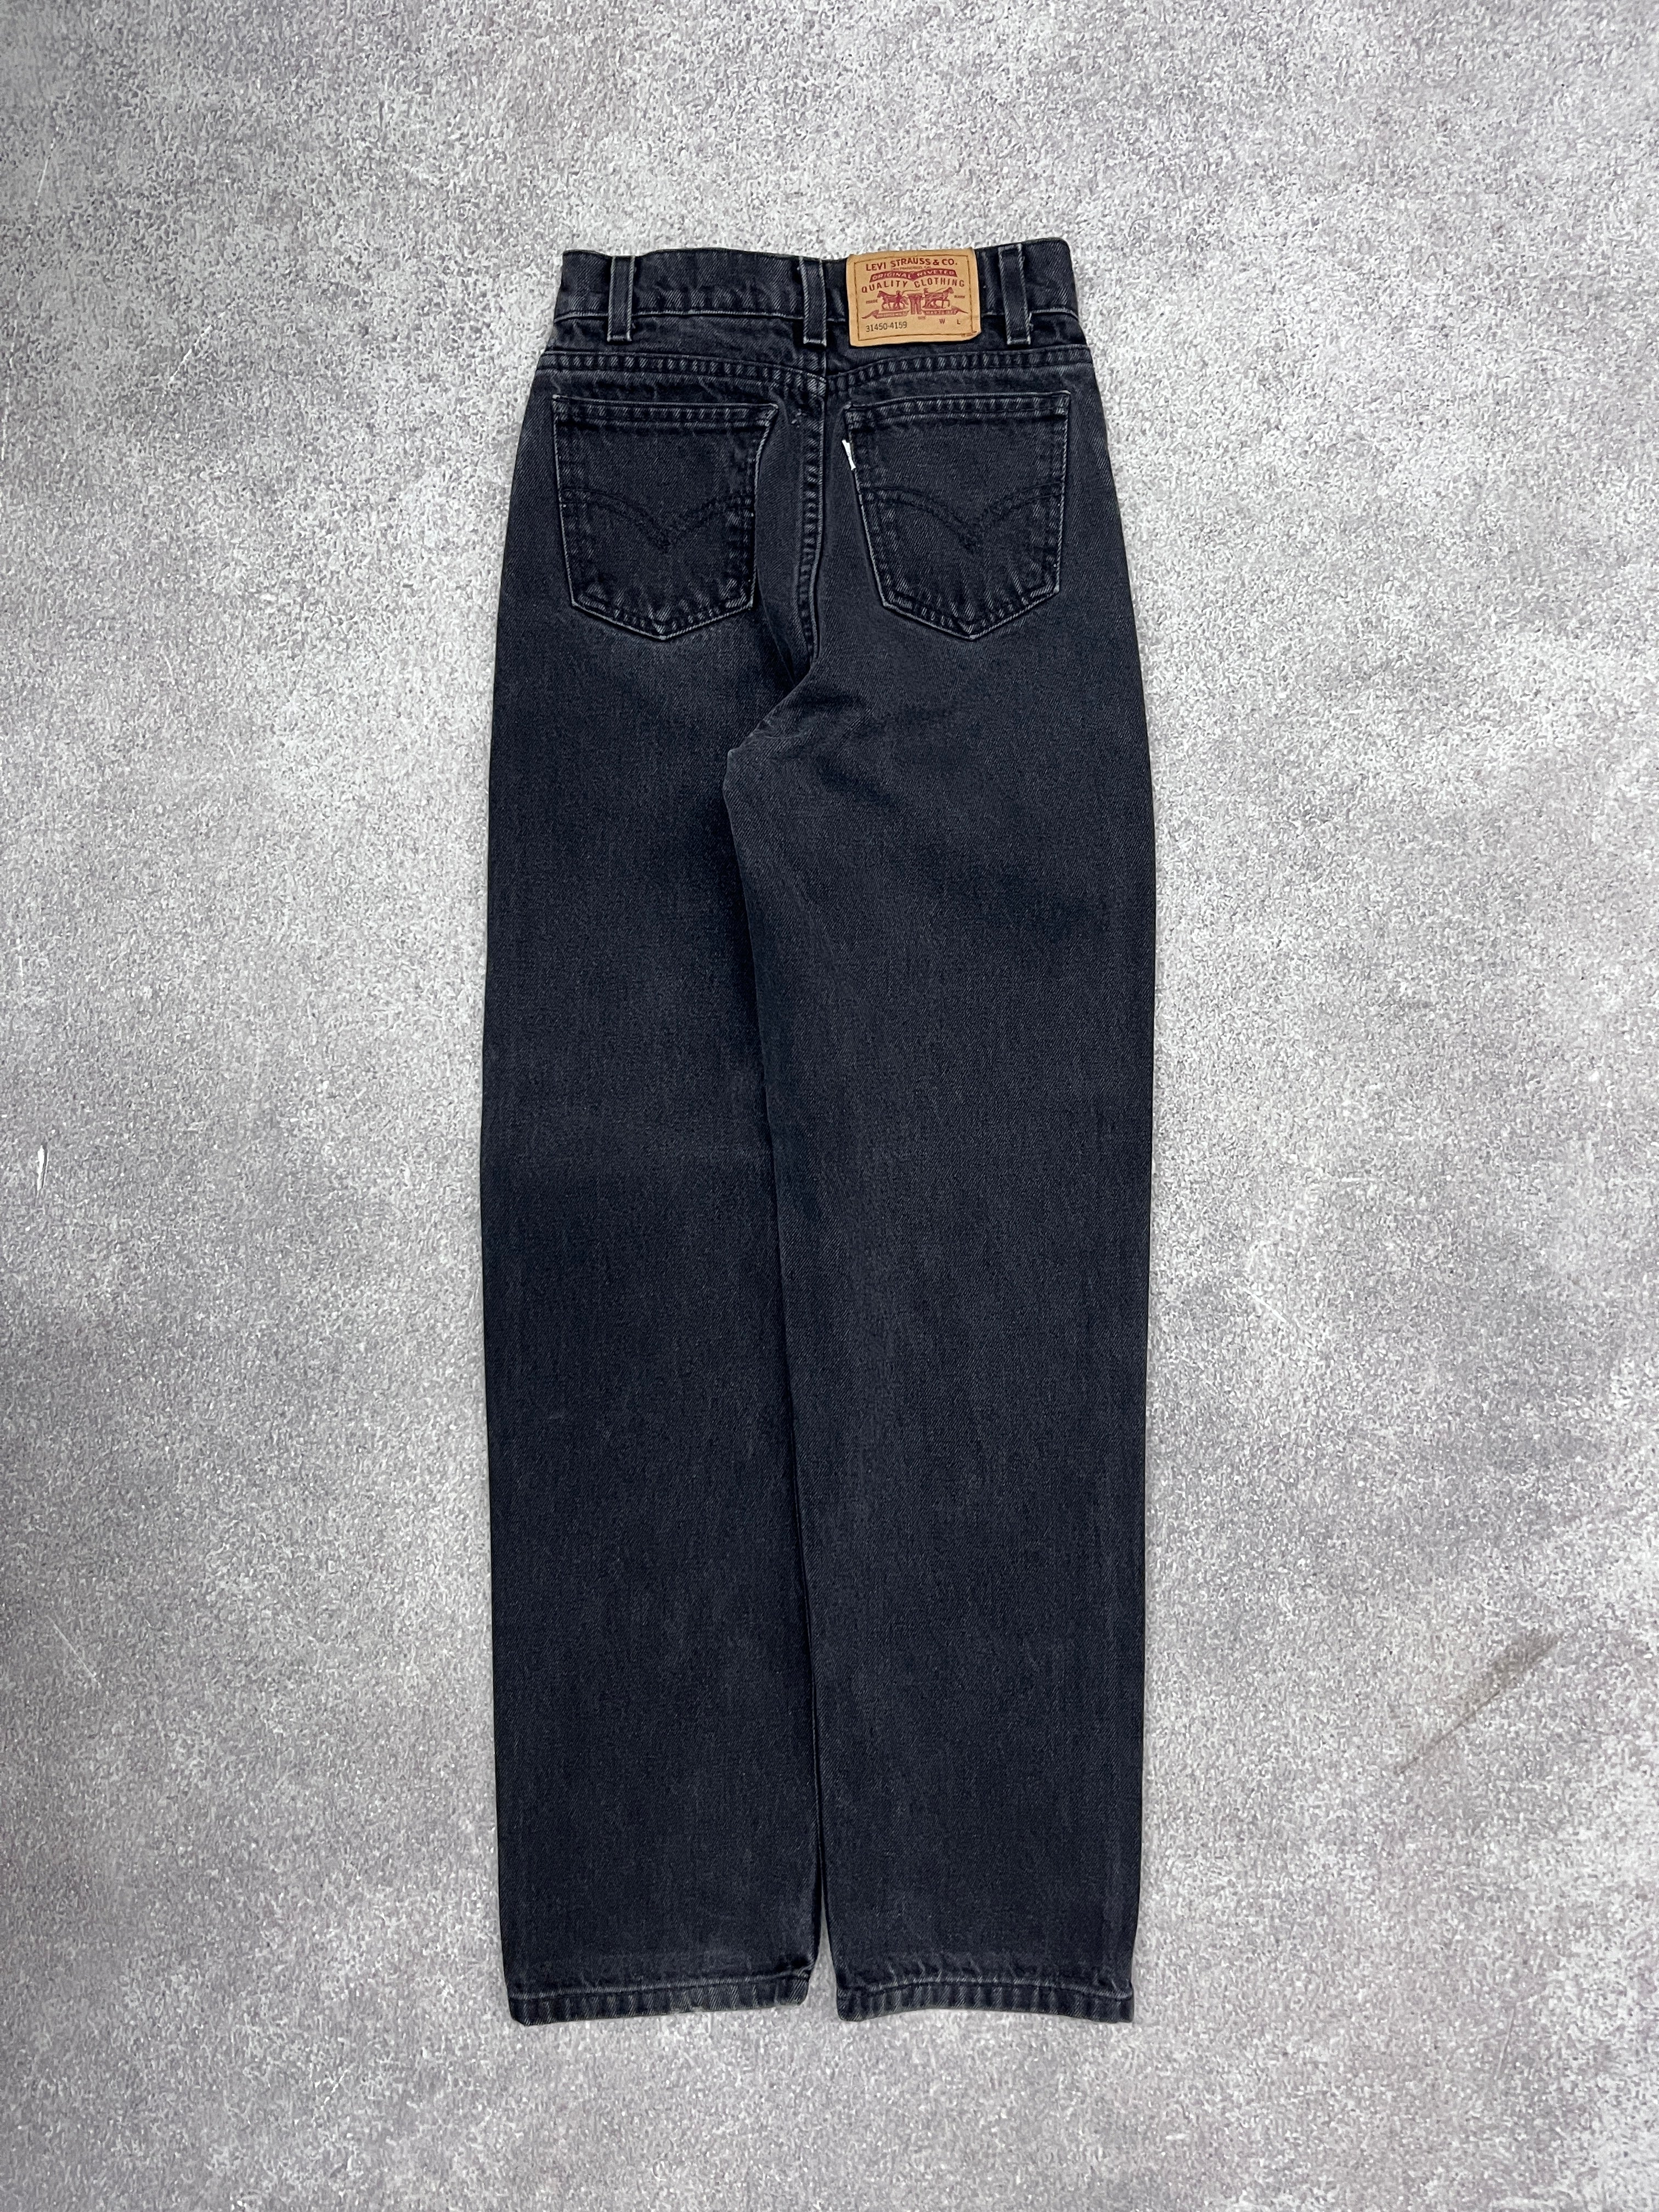 Vintage Levi 559 Denim Jeans // W00 L00 - RHAGHOUSE VINTAGE